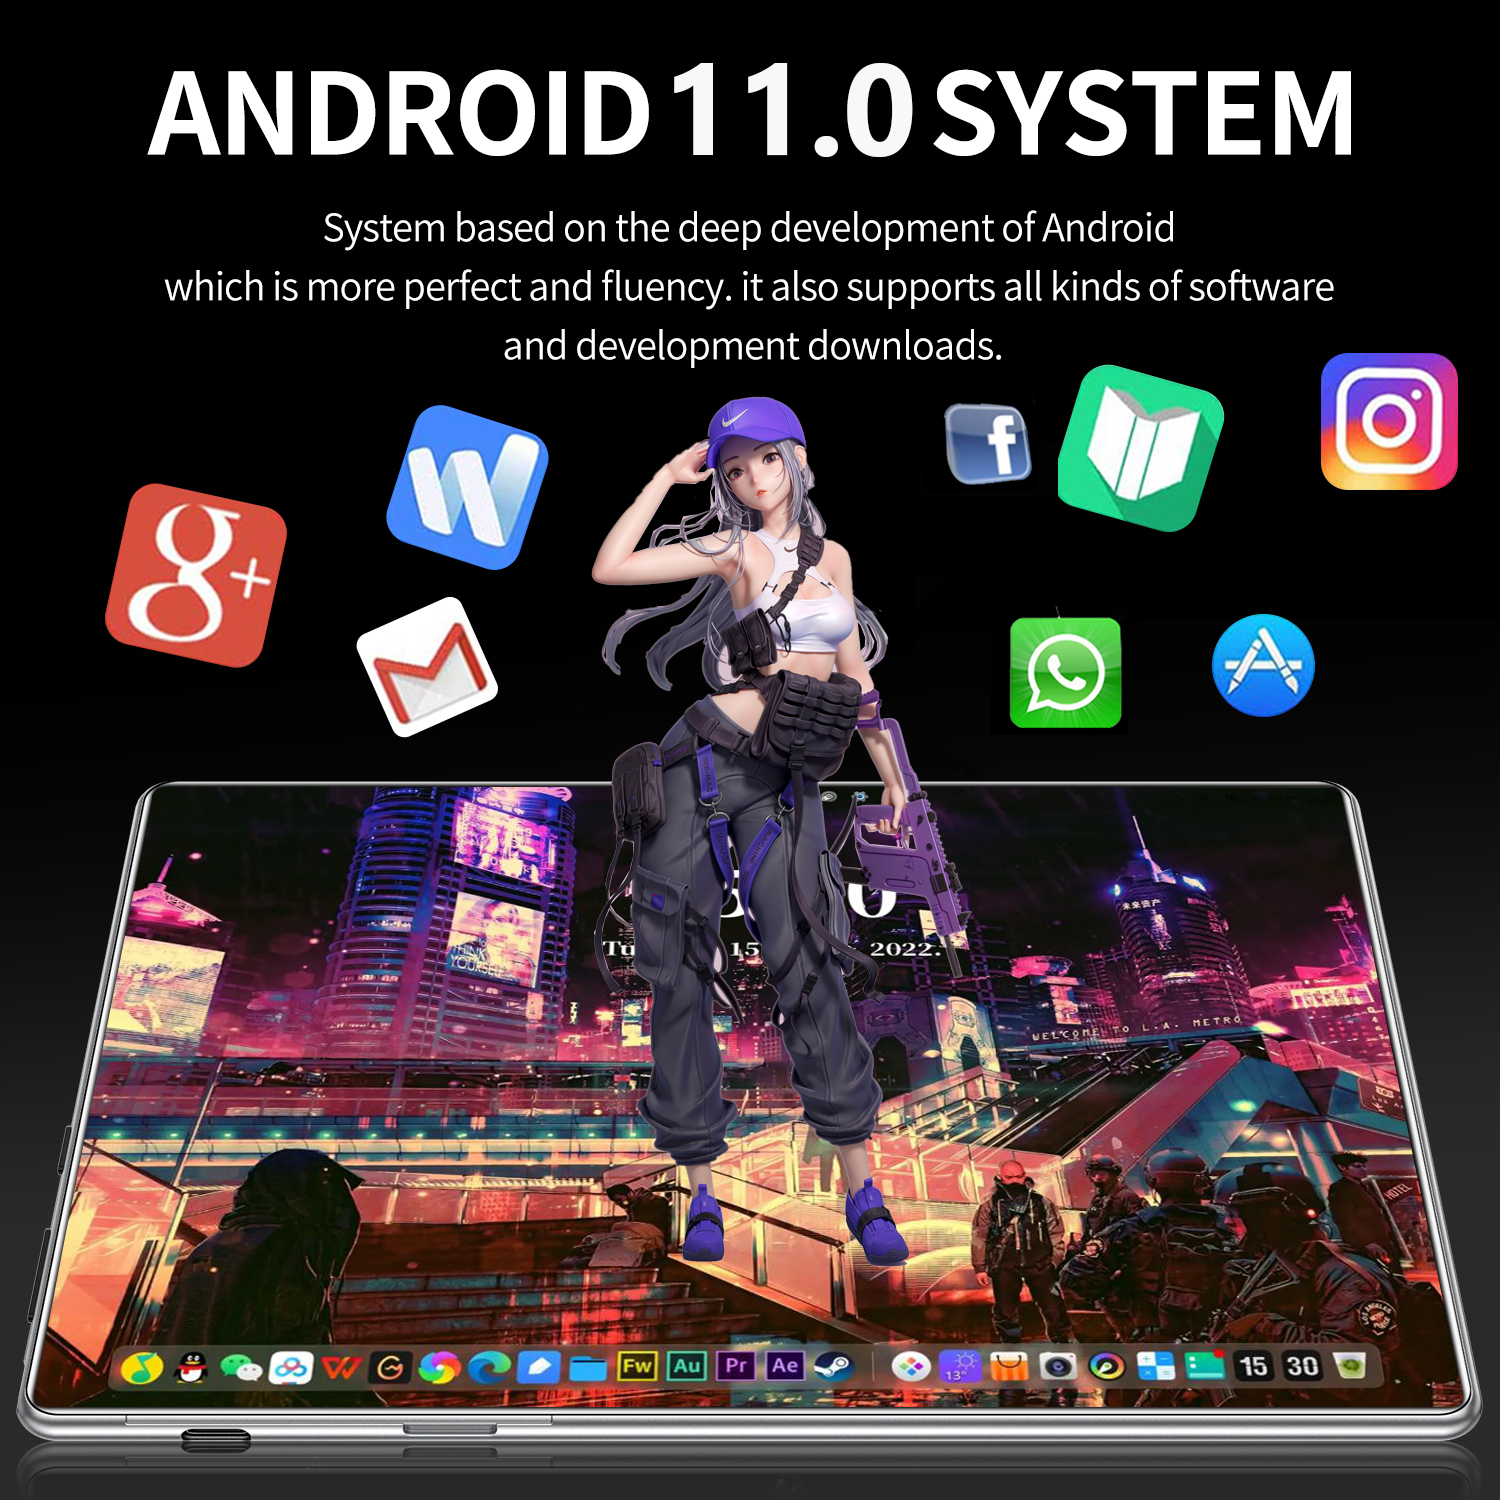 มุมมองเพิ่มเติมของสินค้า 【จัดส่งฟรี】ระบบภาษาไทย sansumg Galaxy Tab S8 แท็บเล็ต 10.4 นิ้ว RAM16G ROM512G Full HD แท็บเล็ตโทรได้ 4g/5G แท็บเล็ตสำหรับเล่นเกมราคาถูก แท็บเล็ตของแท้ แท็บเล็ตถูกๆ แท็บเล็ต ราคา ถูกๆ tablet android รับประกัน 1 ป แท็บเล็ตของแท้2023 แท็บเล็ตราคาถูก sg